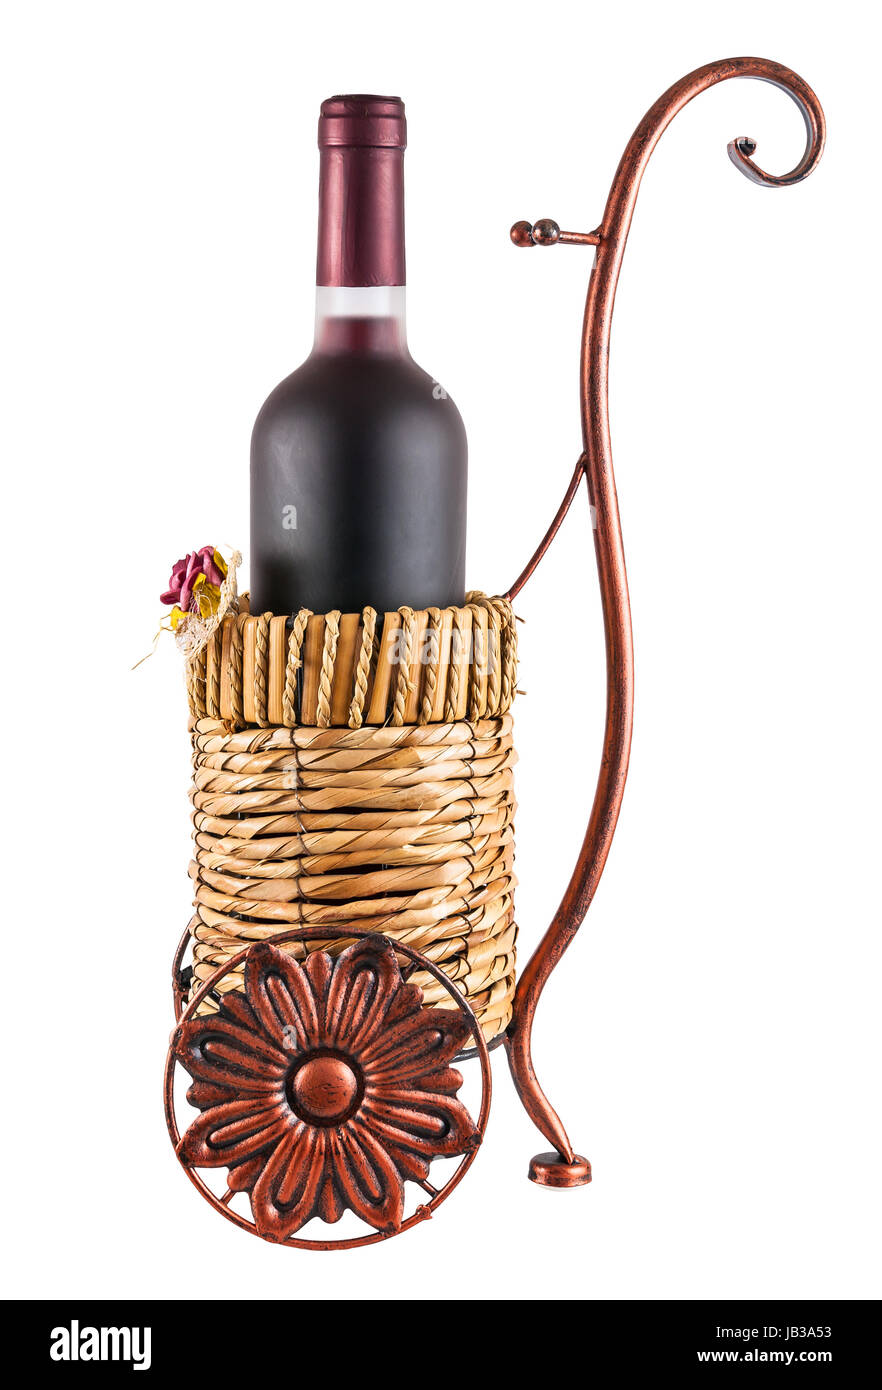 Bottiglia di vino rosso nel cestino con ruote isolato su sfondo bianco con tracciato di ritaglio Foto Stock